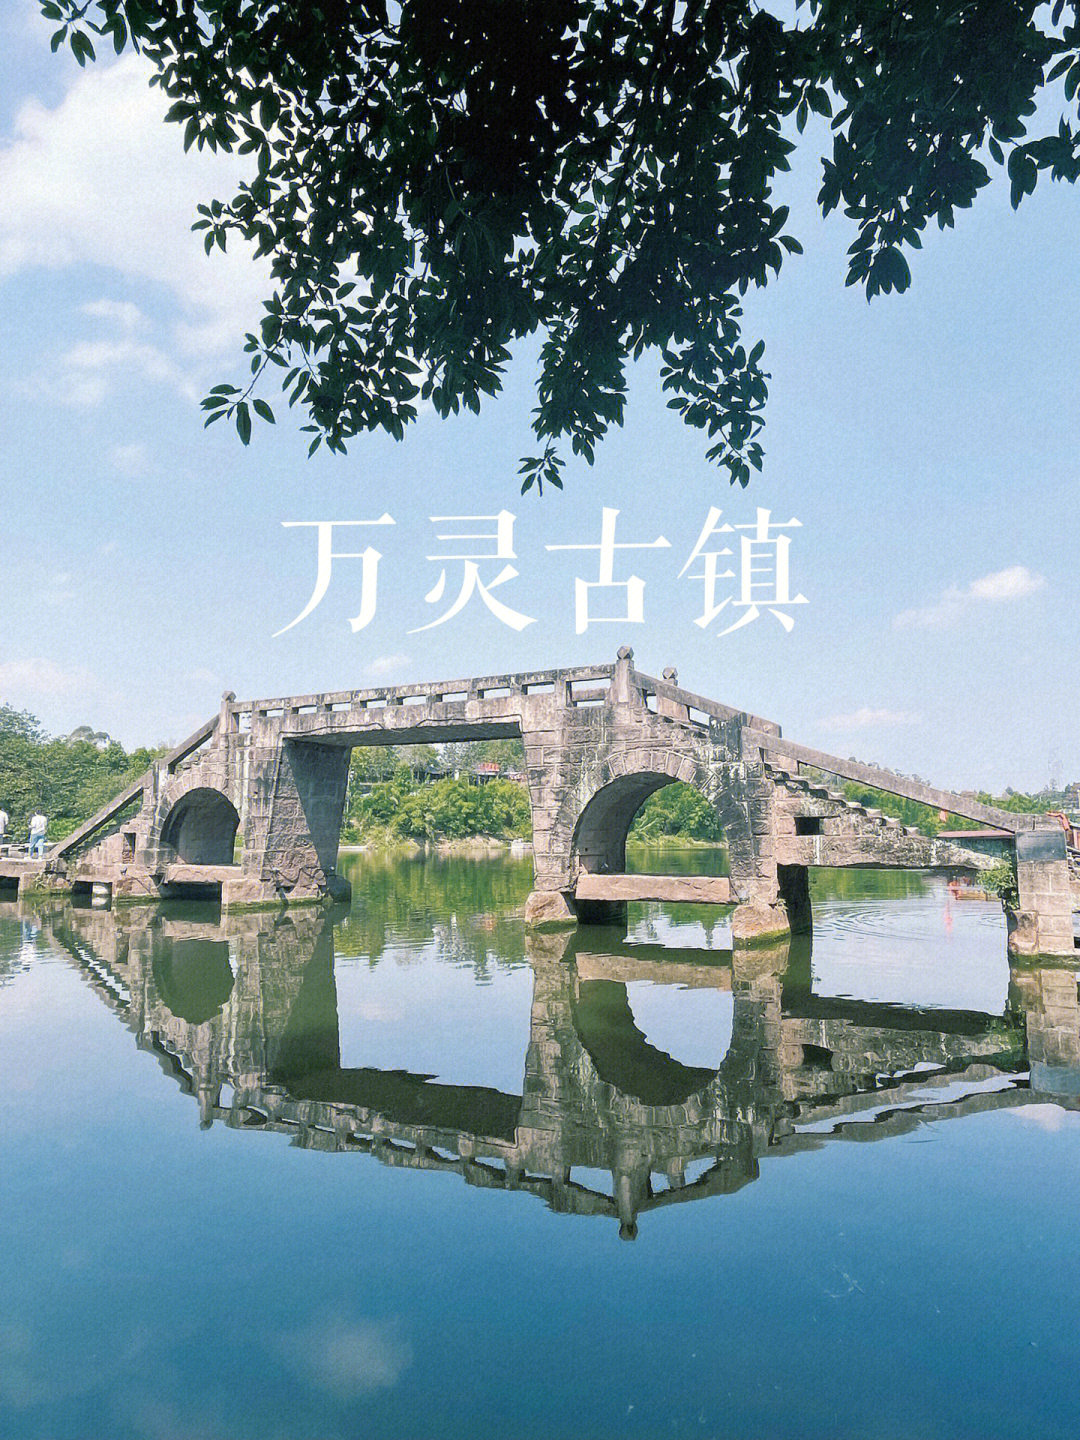 重庆周边游荣昌万灵古镇不一样的古镇体验